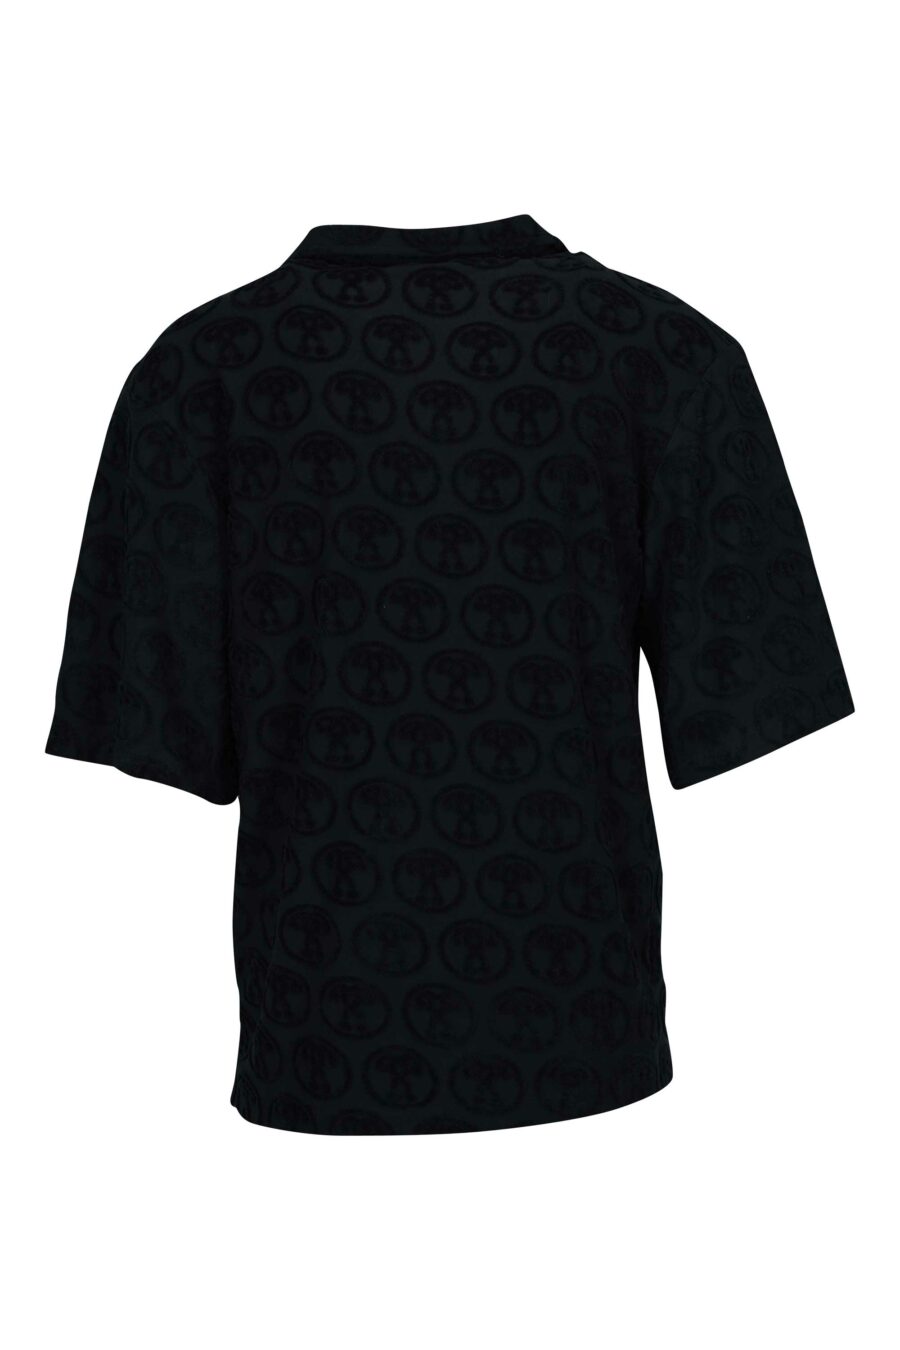 Camisa preta de manga curta com "logótipo por todo o lado" dupla pergunta - 667113670744 1